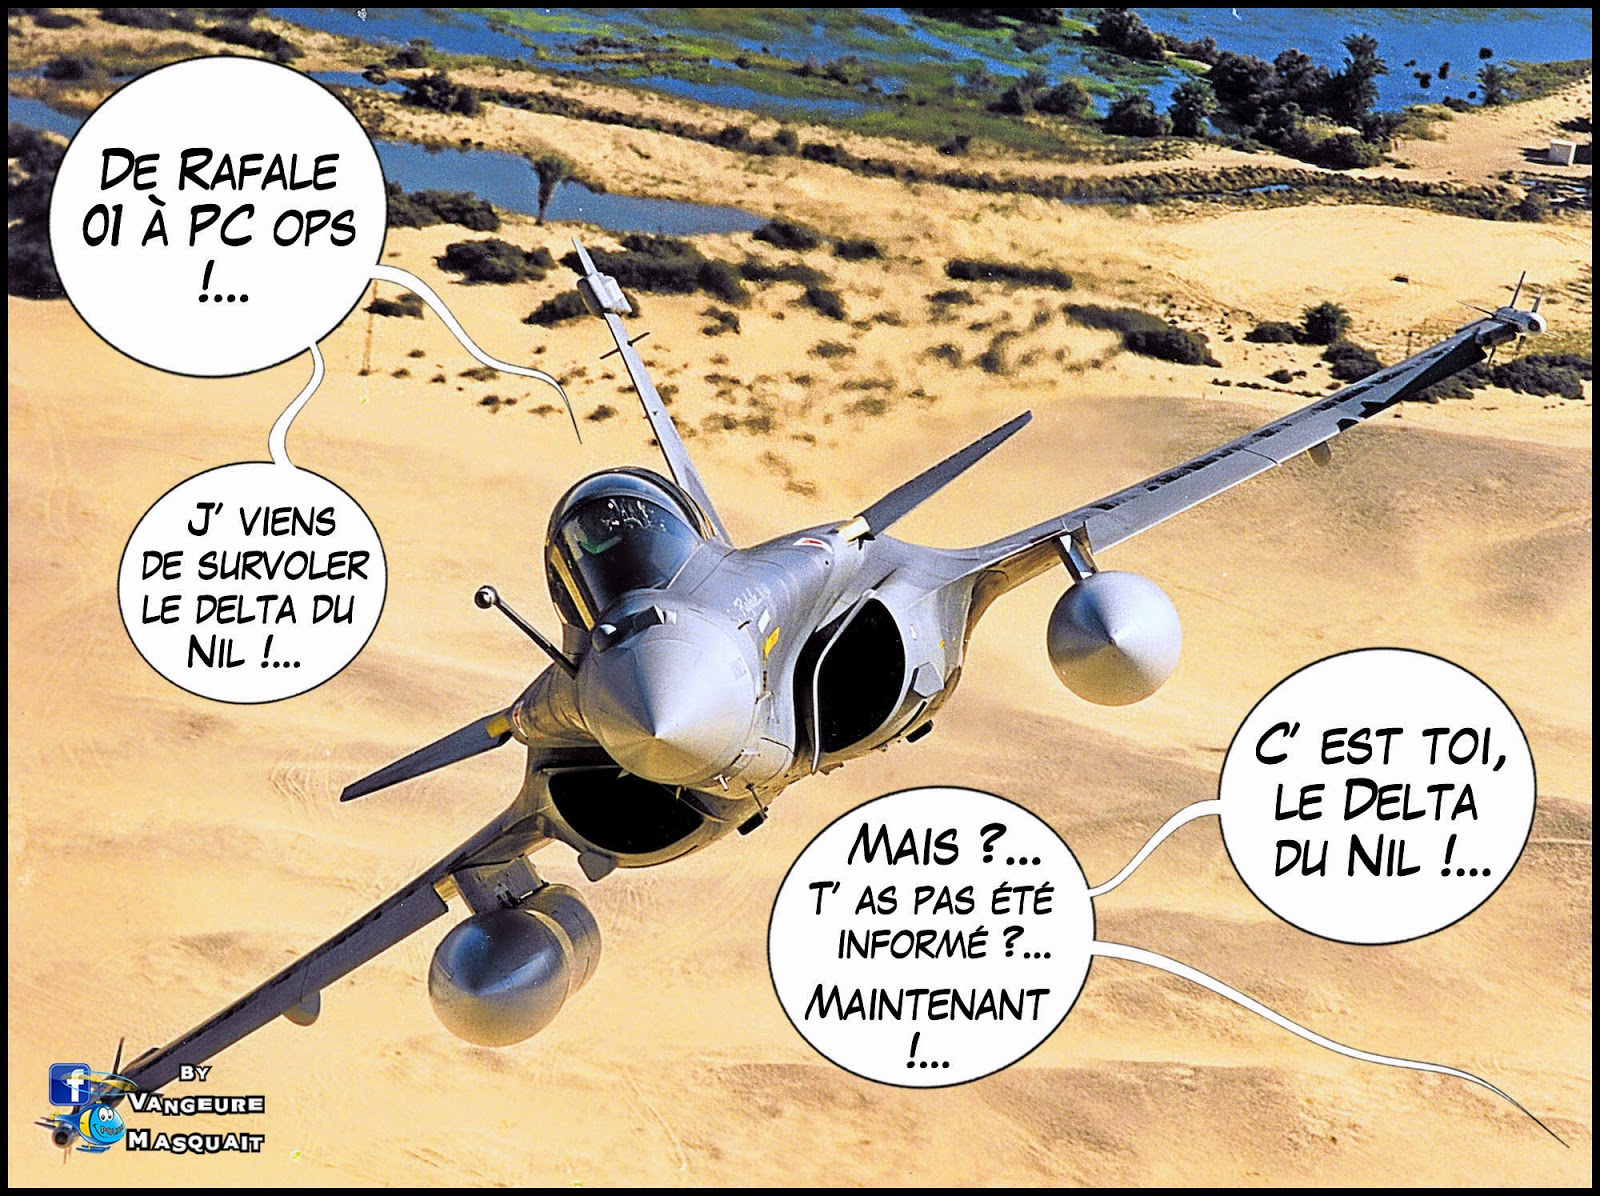 La France déploie 36 avions contre Daesh